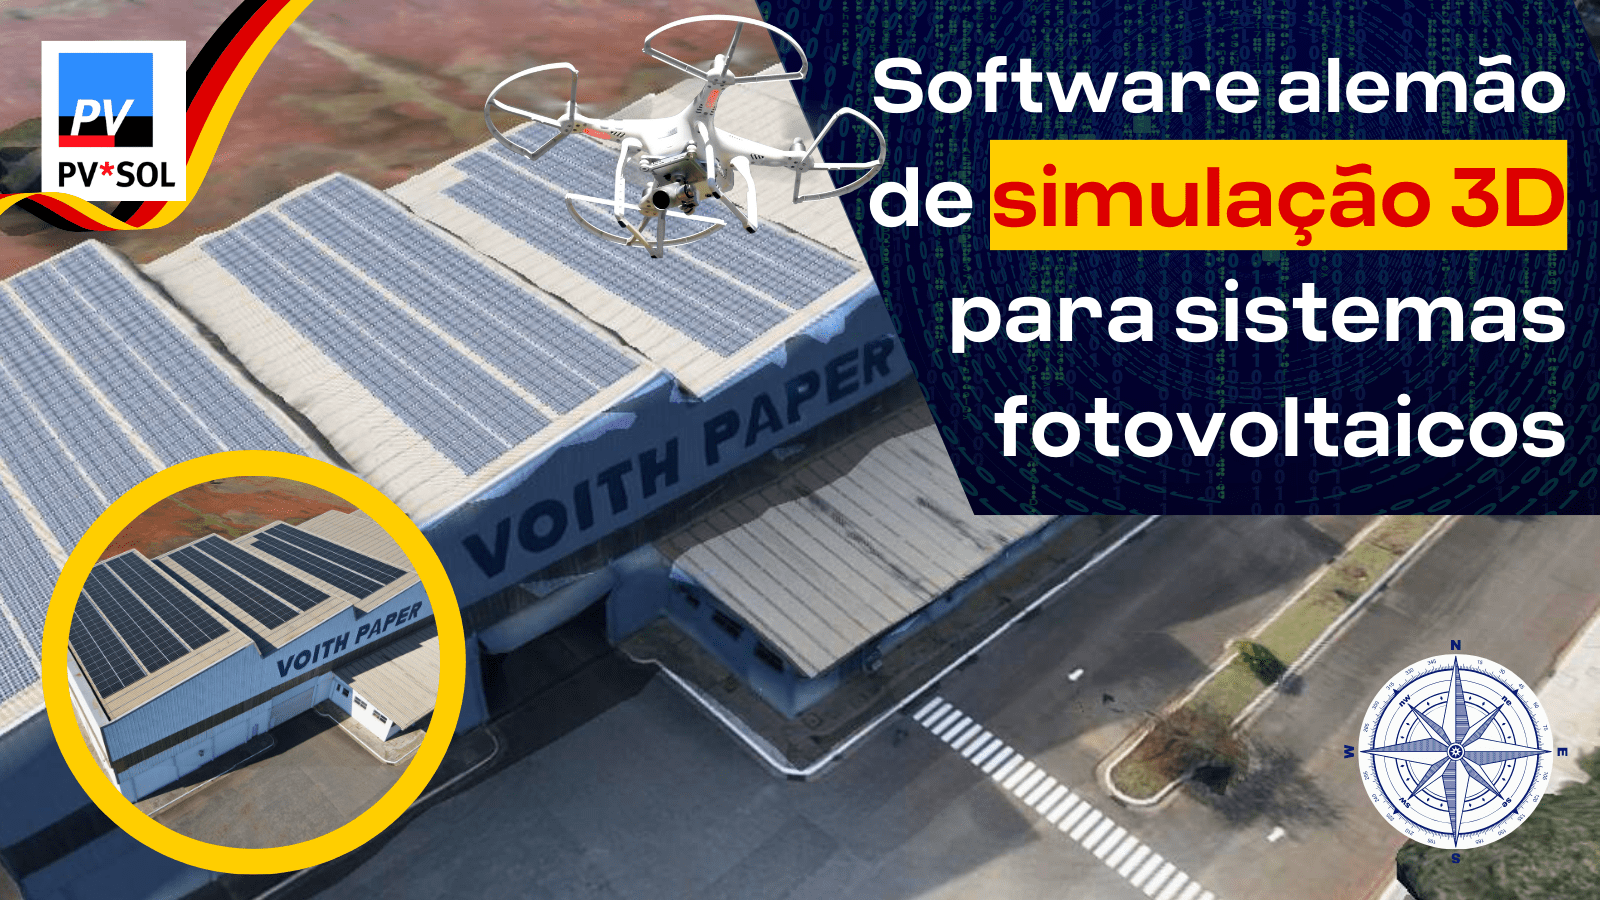 Para os projetos Fotovoltaicos, contamos com o auxílio de um software alemão de simulação 3D